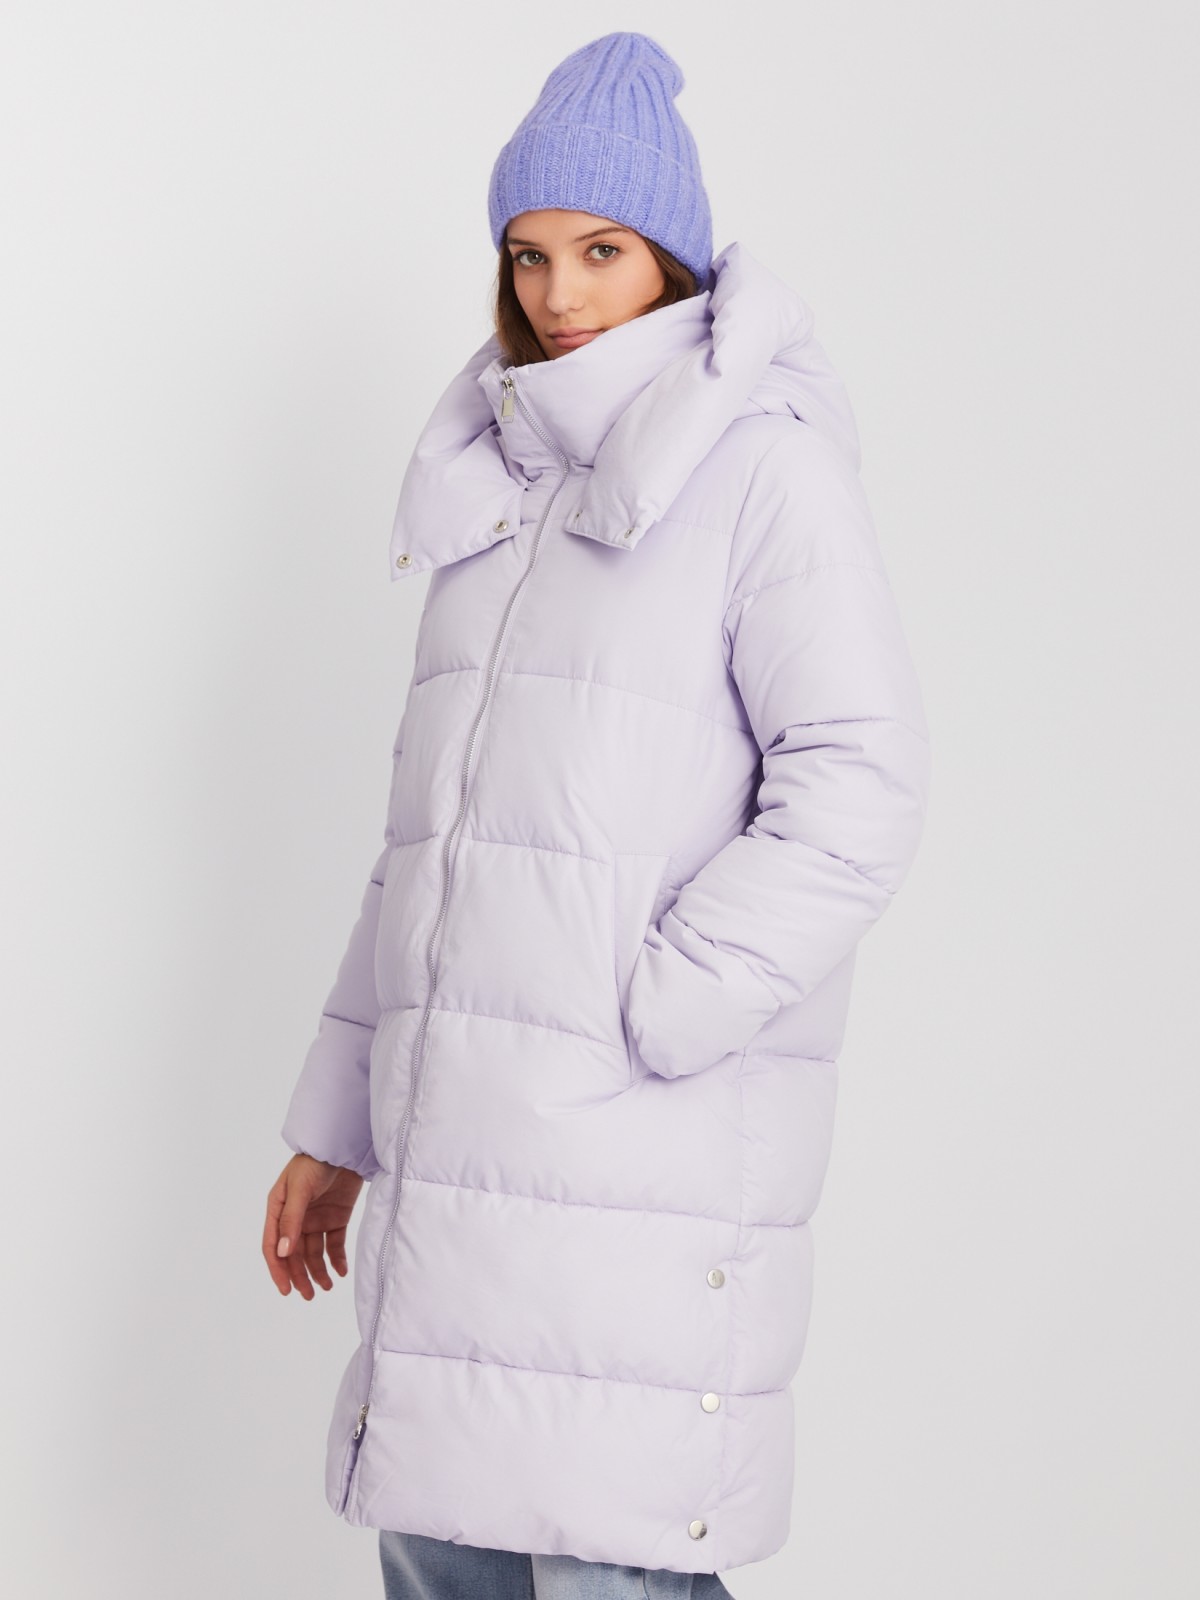 Тёплая куртка-пальто с капюшоном и боковыми шлицами на кнопках zolla 023425202074, цвет лиловый, размер XS - фото 3